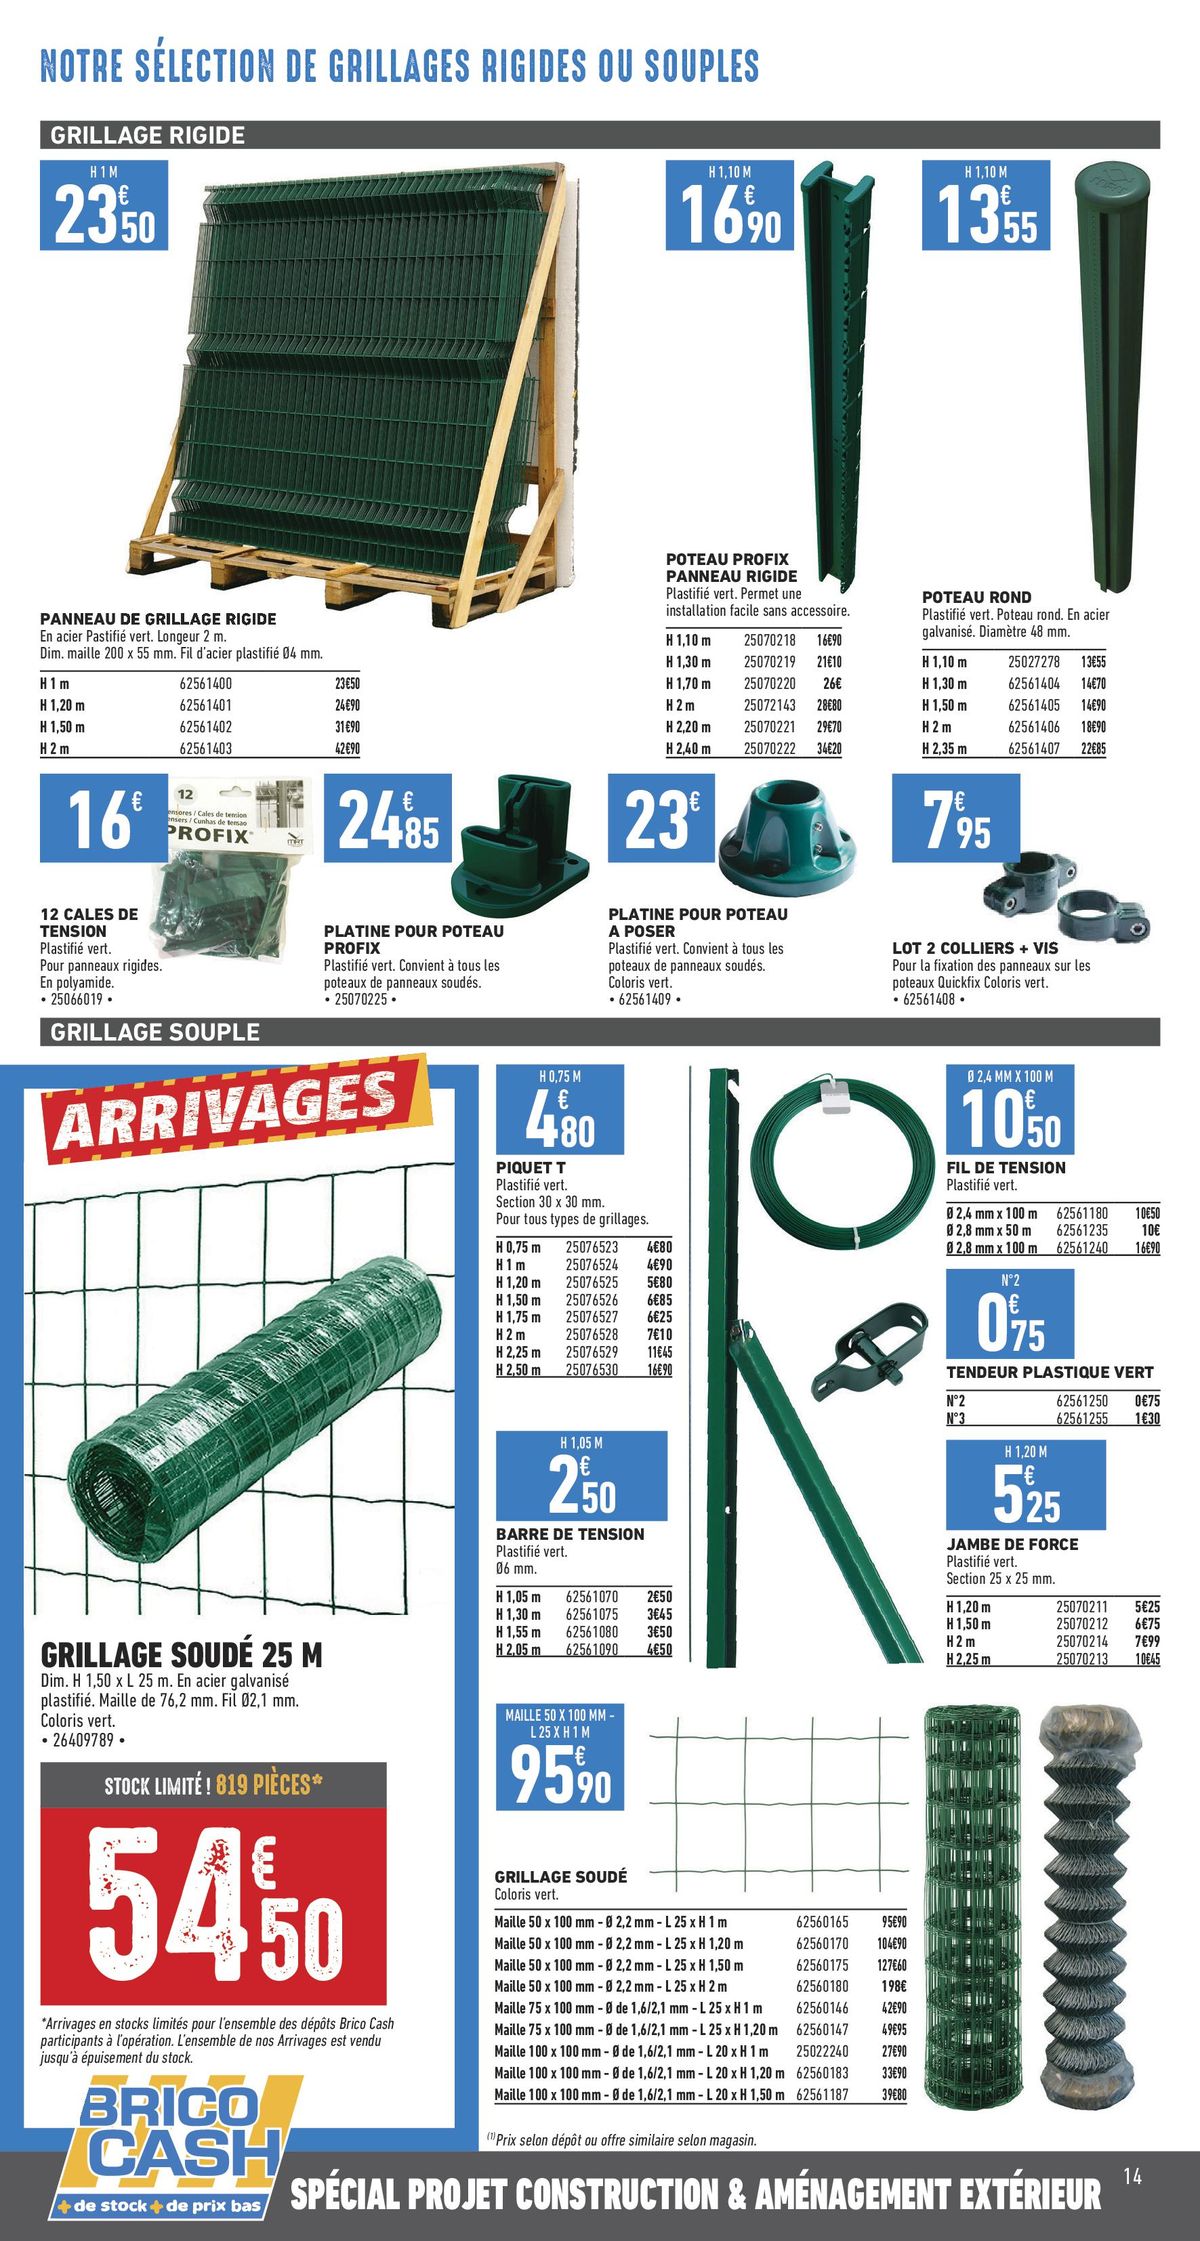 Catalogue Catalogue Construction & aménagement extérieur, page 00005